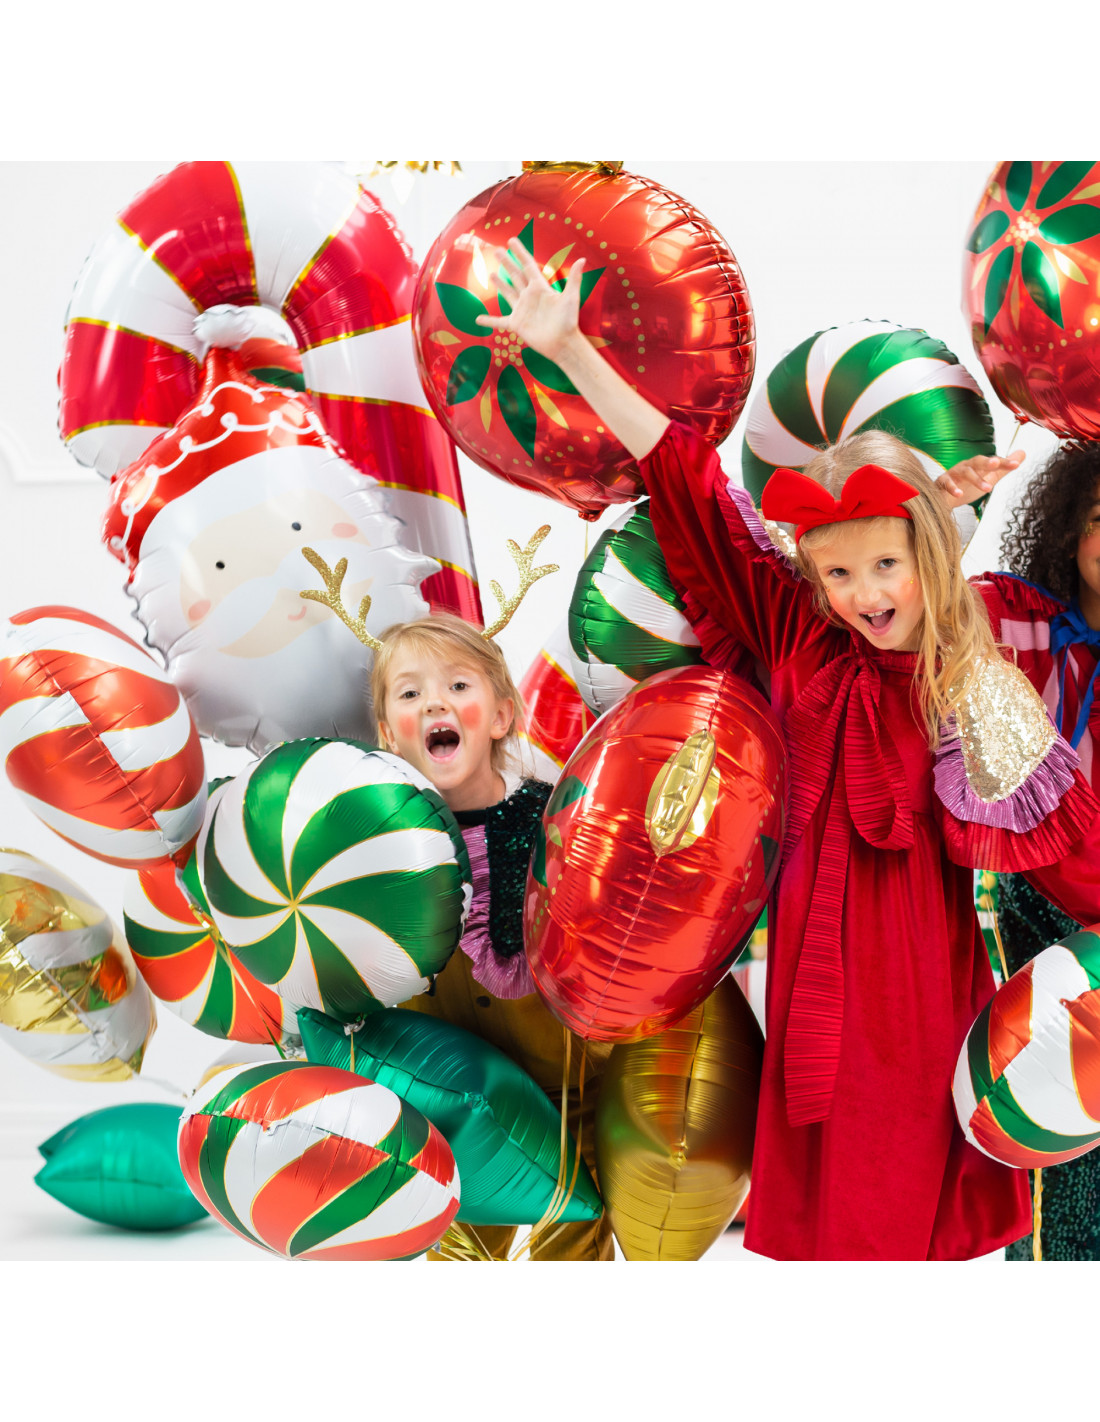 Ballon helium écureuil- Decoration anniversaire foret enfant